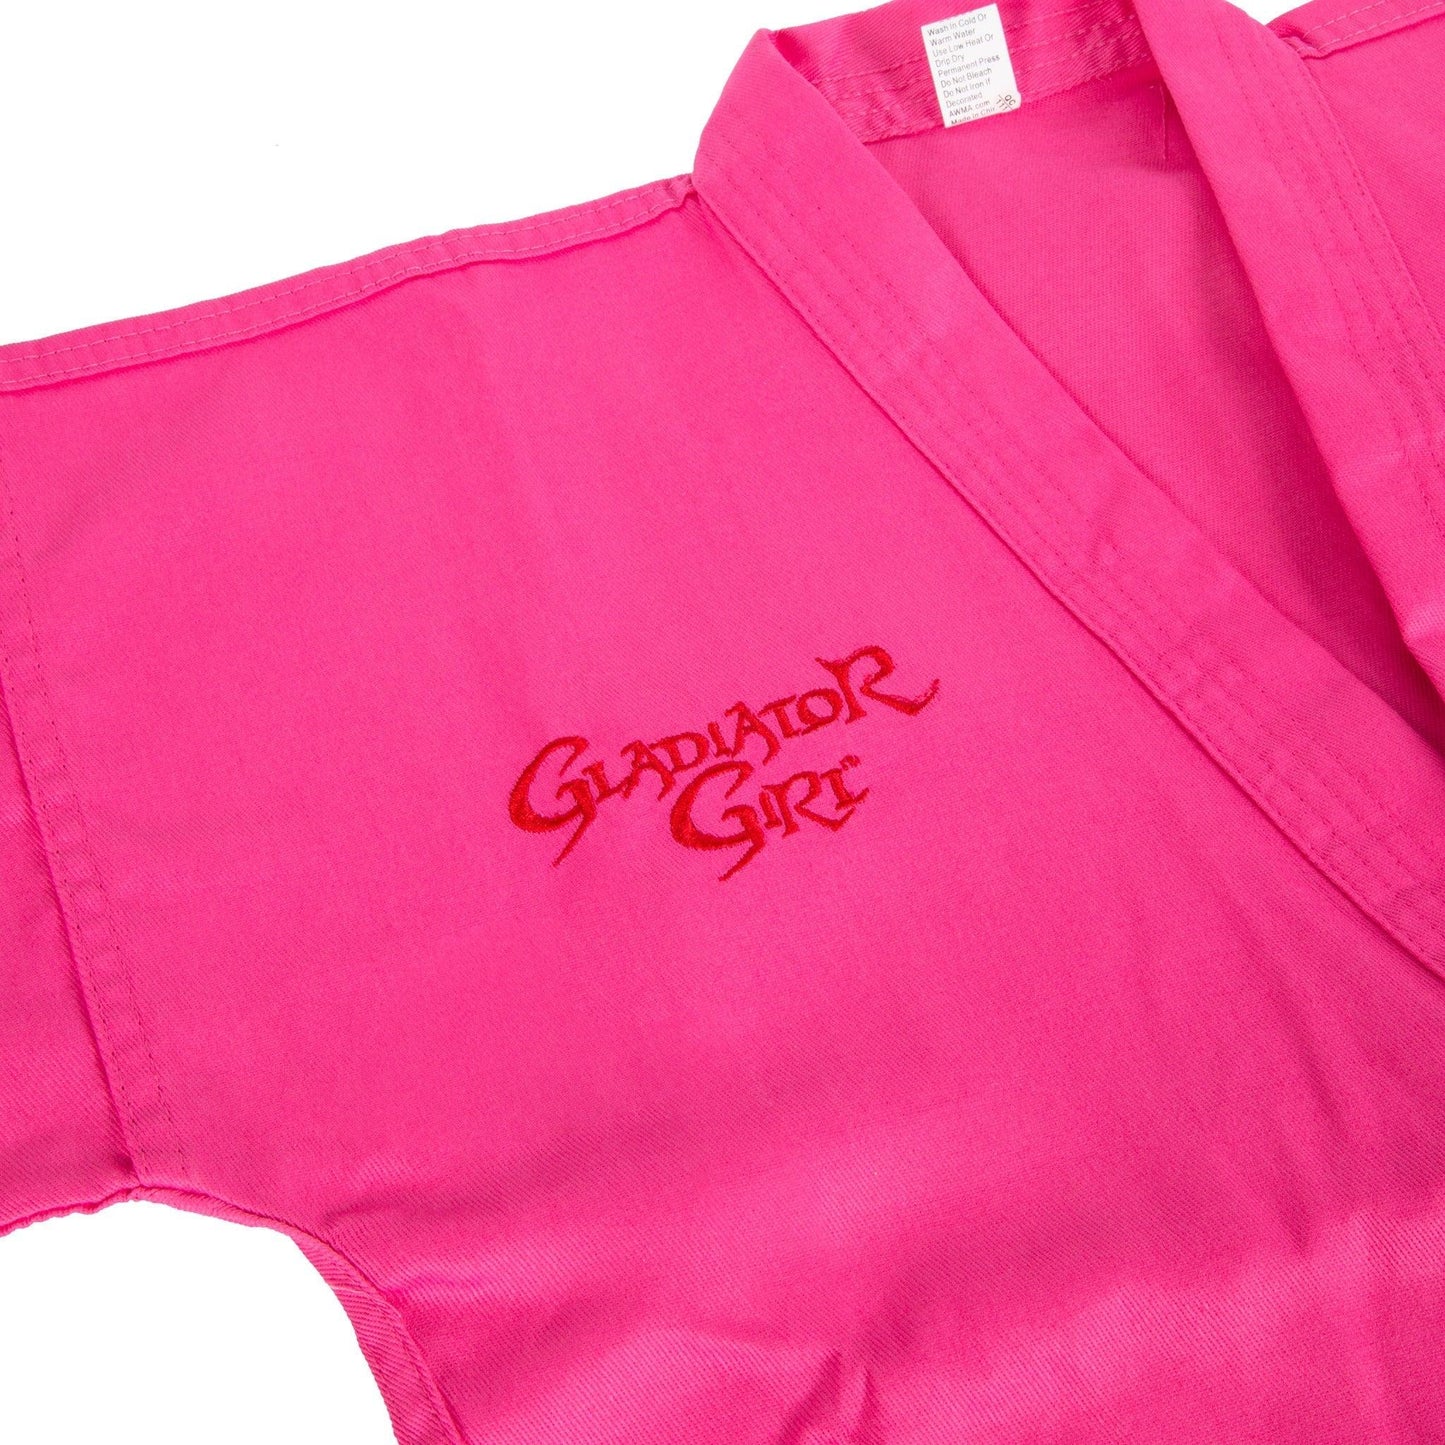 ProForce Gladiator Girl Pink 6 oz. Karate Uniform with Free White Belt - 55/45 Blend - Violent Art Shop